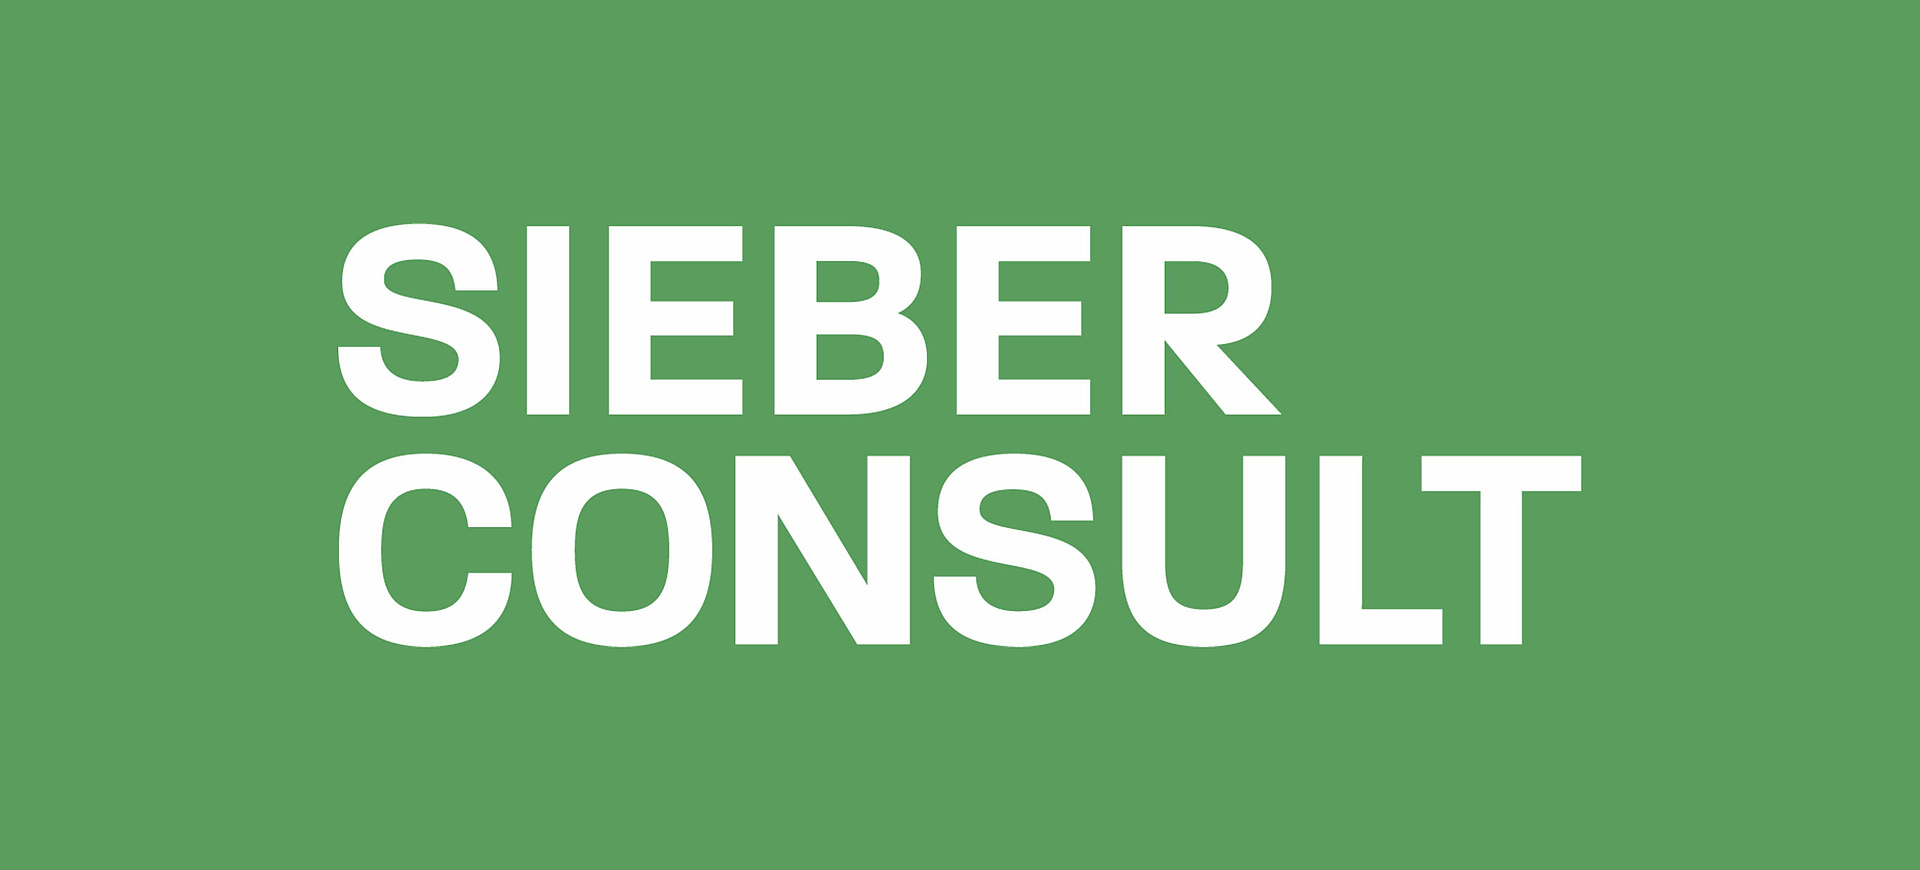 Sieber Consult Logo